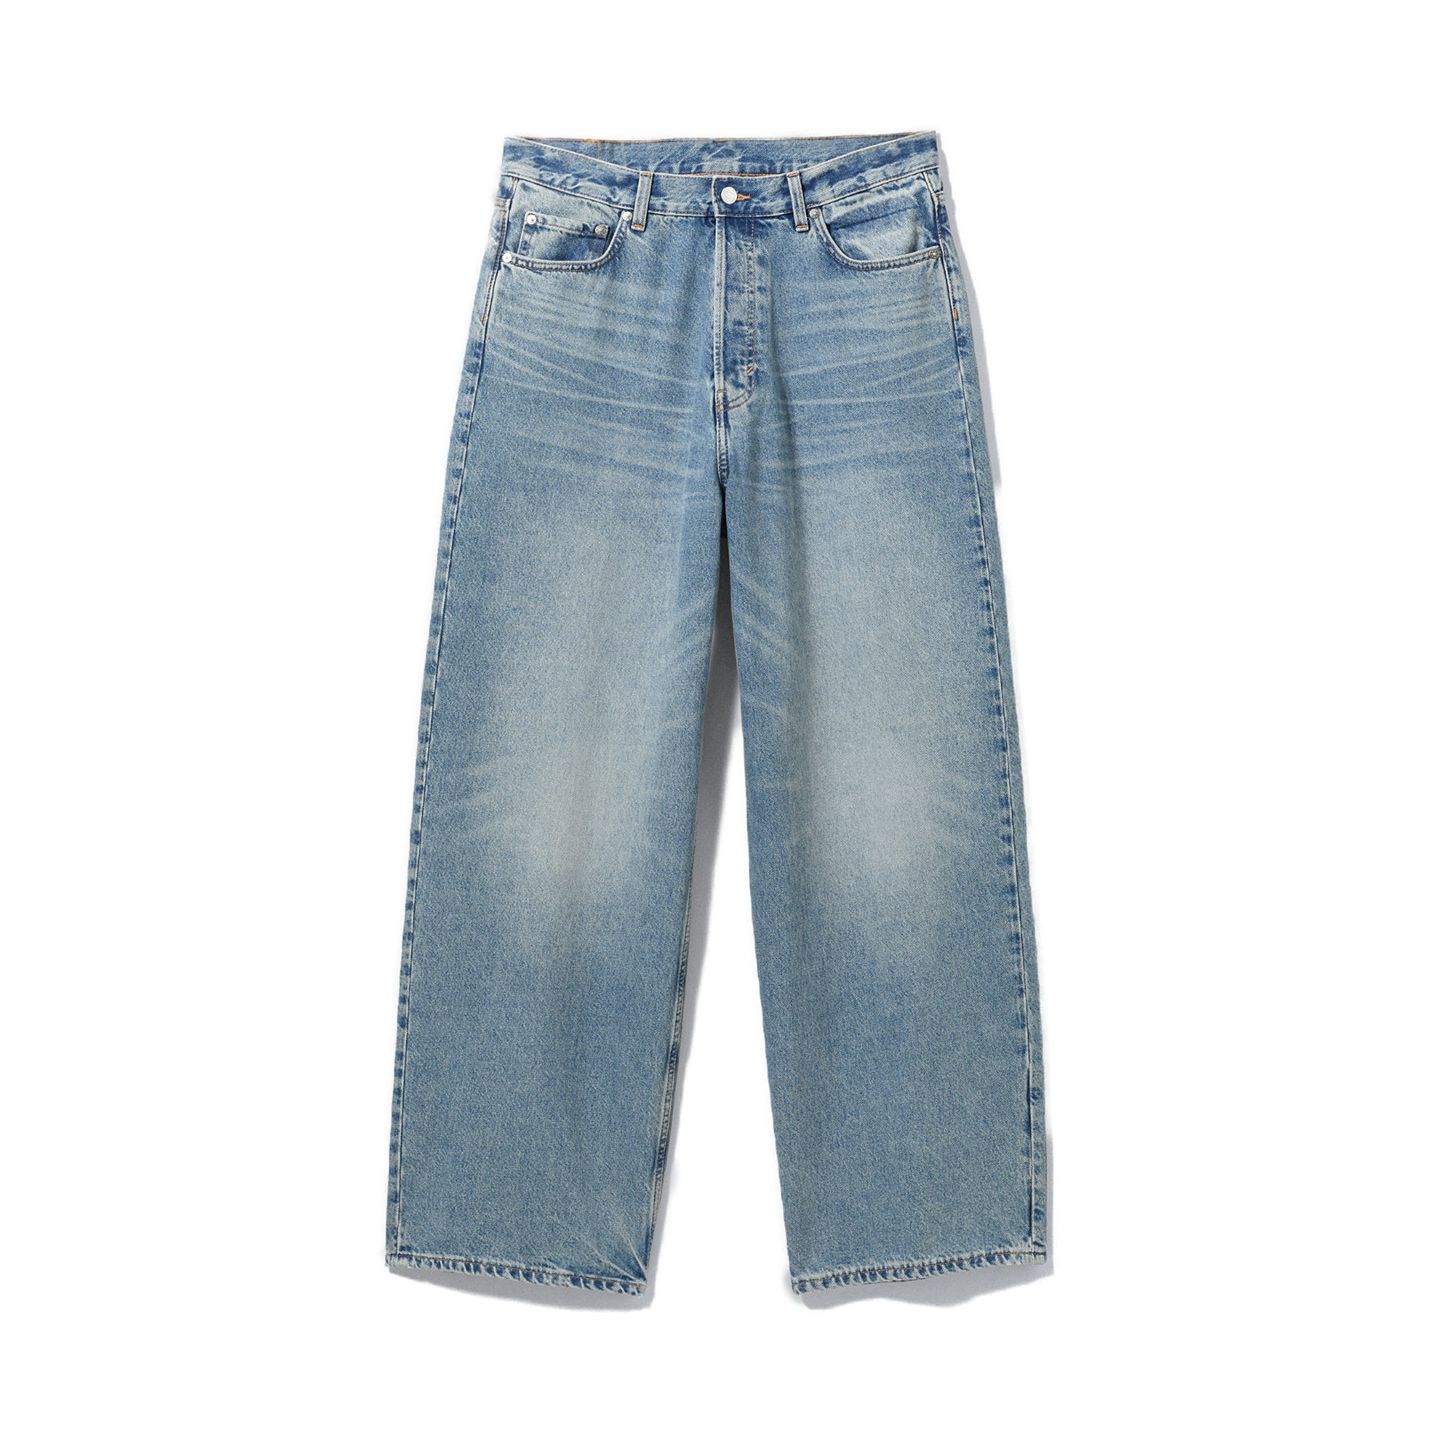 Passt, wackelt und hat Luft! Die Lockere Baggy-Jeans "Astro" von Weekday ist ein wahr gewordener Hosentraum für alle Oversize-Fans. Das weite Bein wirkt ungezwungen, die helle Waschung vermittelt Frühlingsgefühle. 